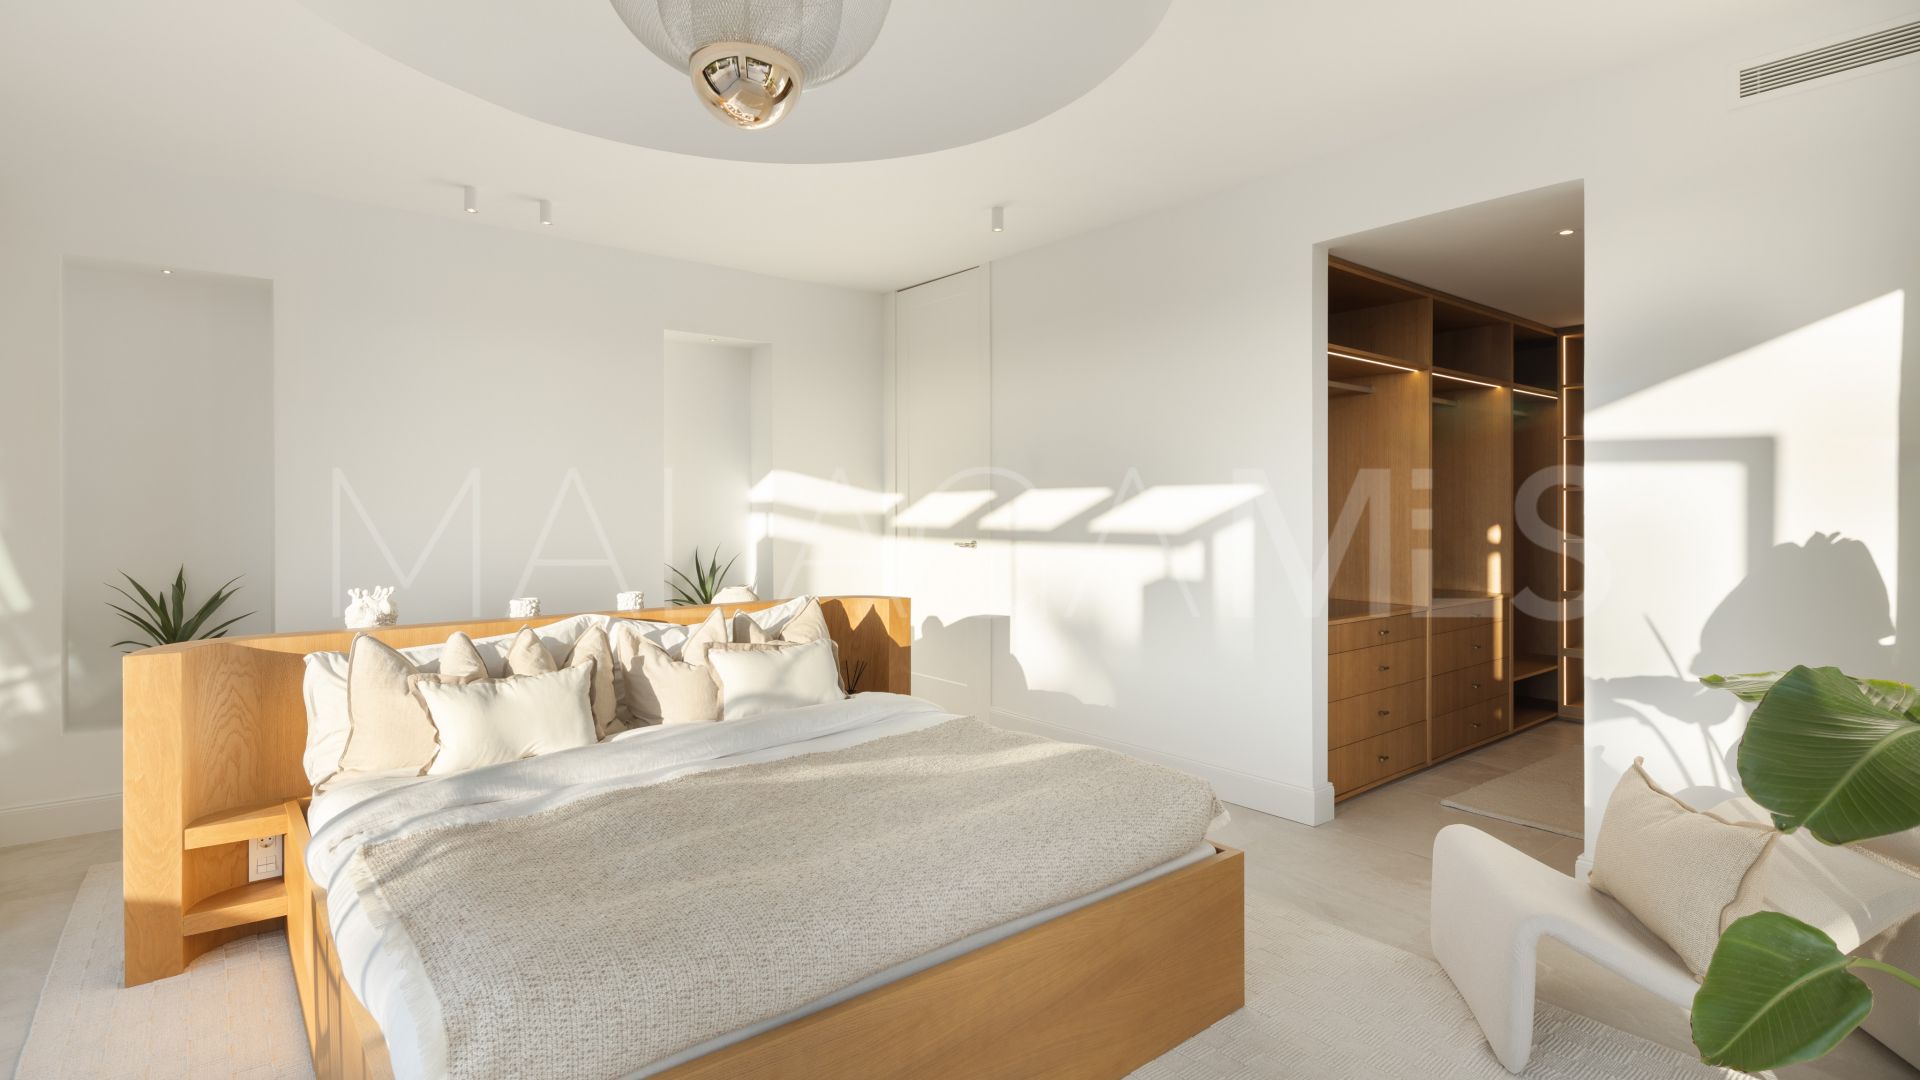 Buy Nueva Andalucia 4 bedrooms villa